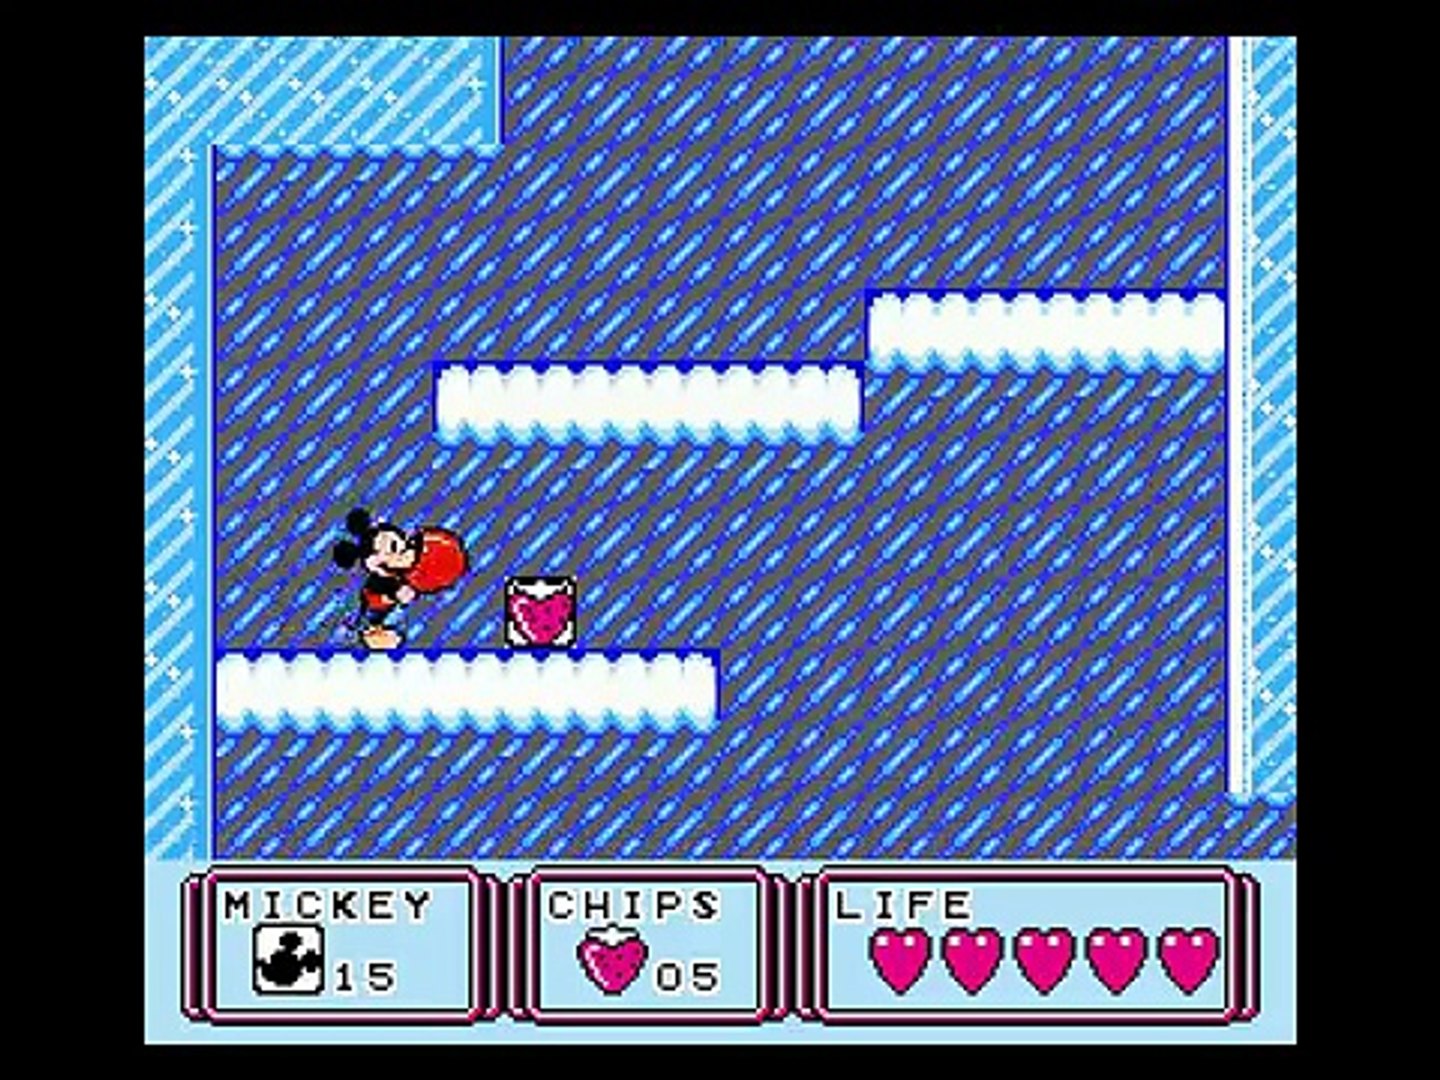 ミッキーマウスIII 夢ふうせん / Mickey Mouse III: Yume Fuusen NES